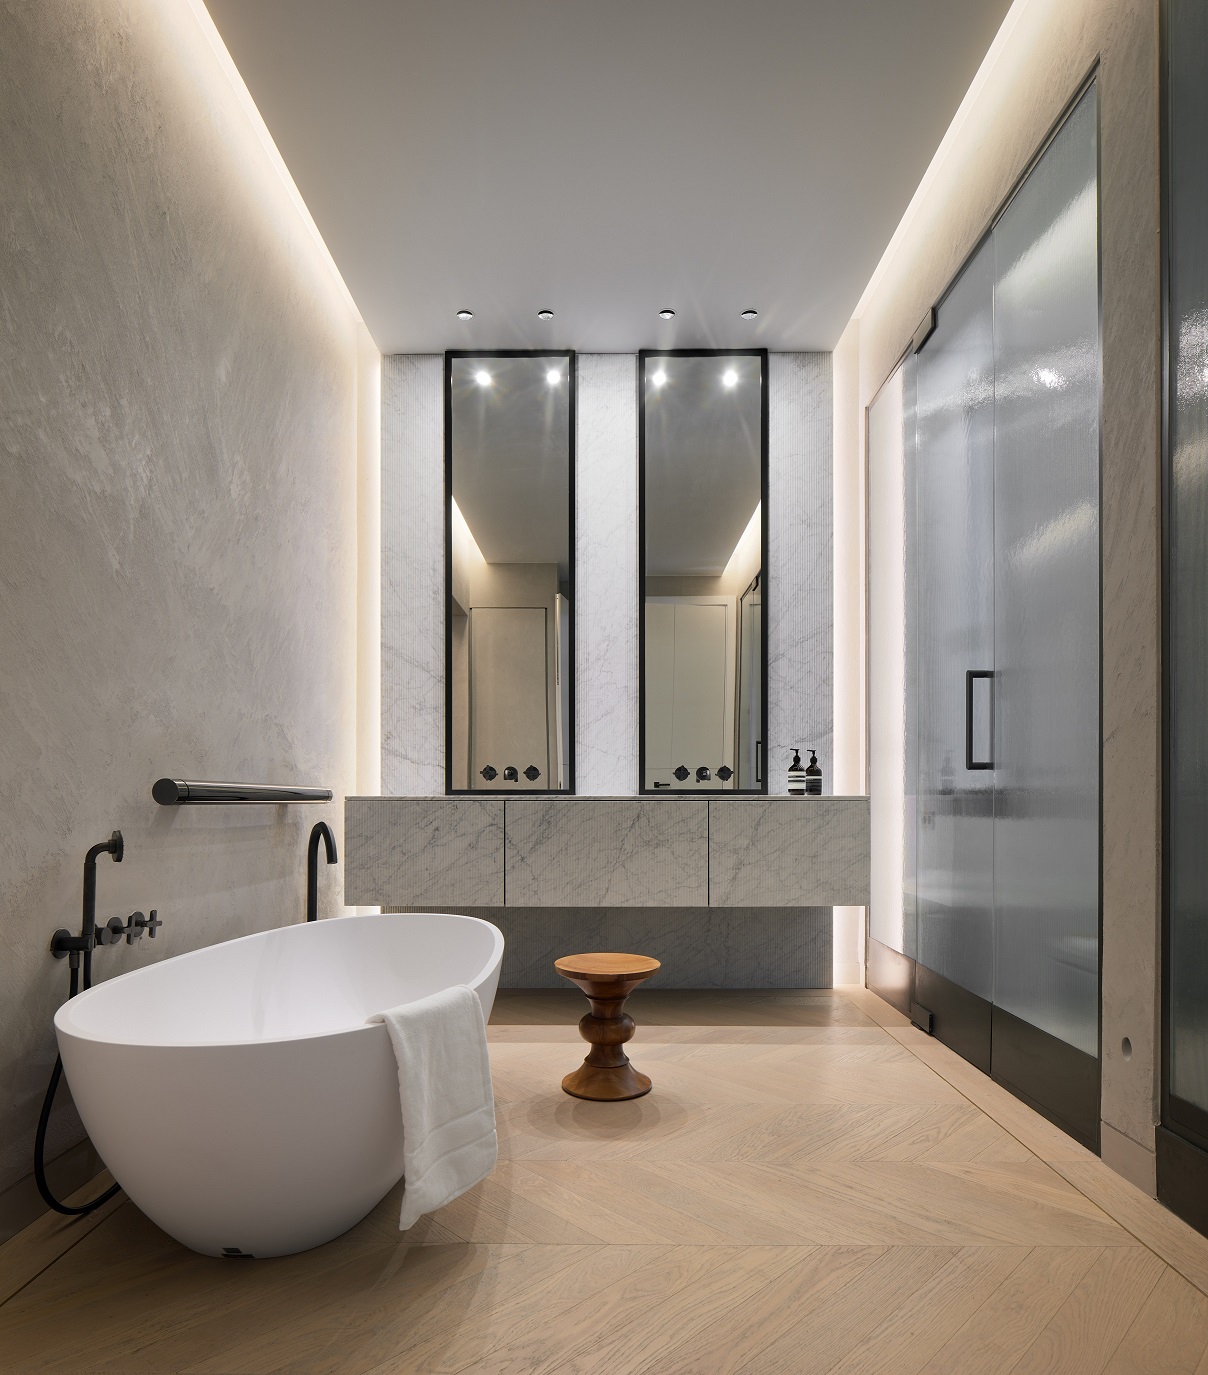 Paseo de Gracia Apartment LUV Studio Pol Viladoms Master Bathroom - LUV Studio - Arquitectura y diseño - Barcelona